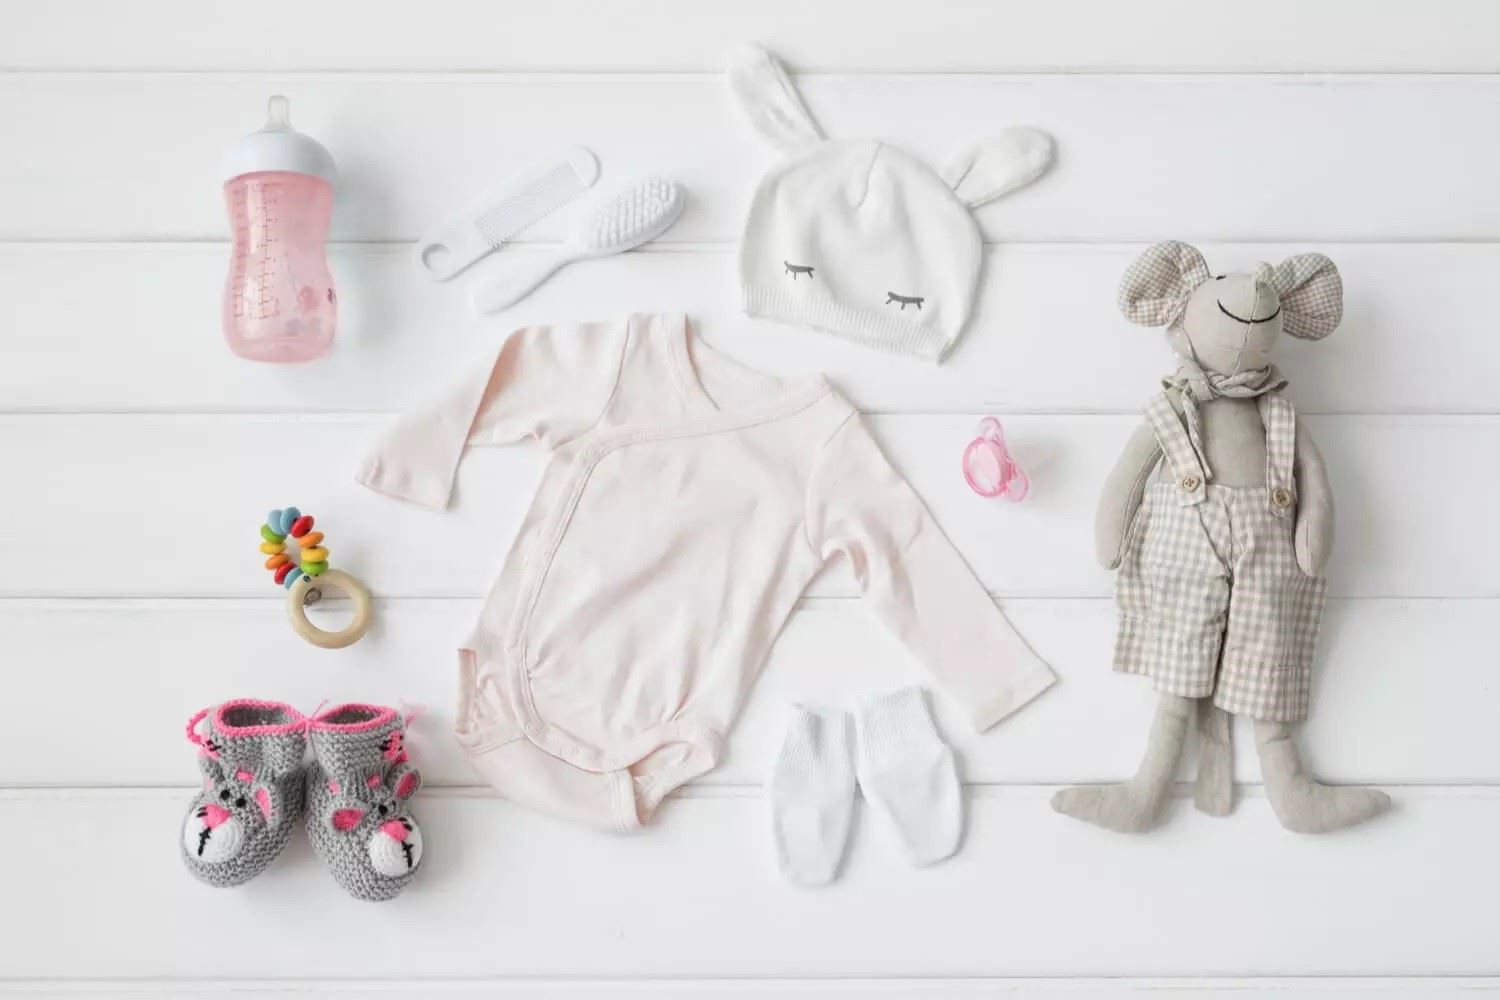 الیا کیدز بهترین سایت برای خرید سیمونی نوزاد و پوشاک کودک